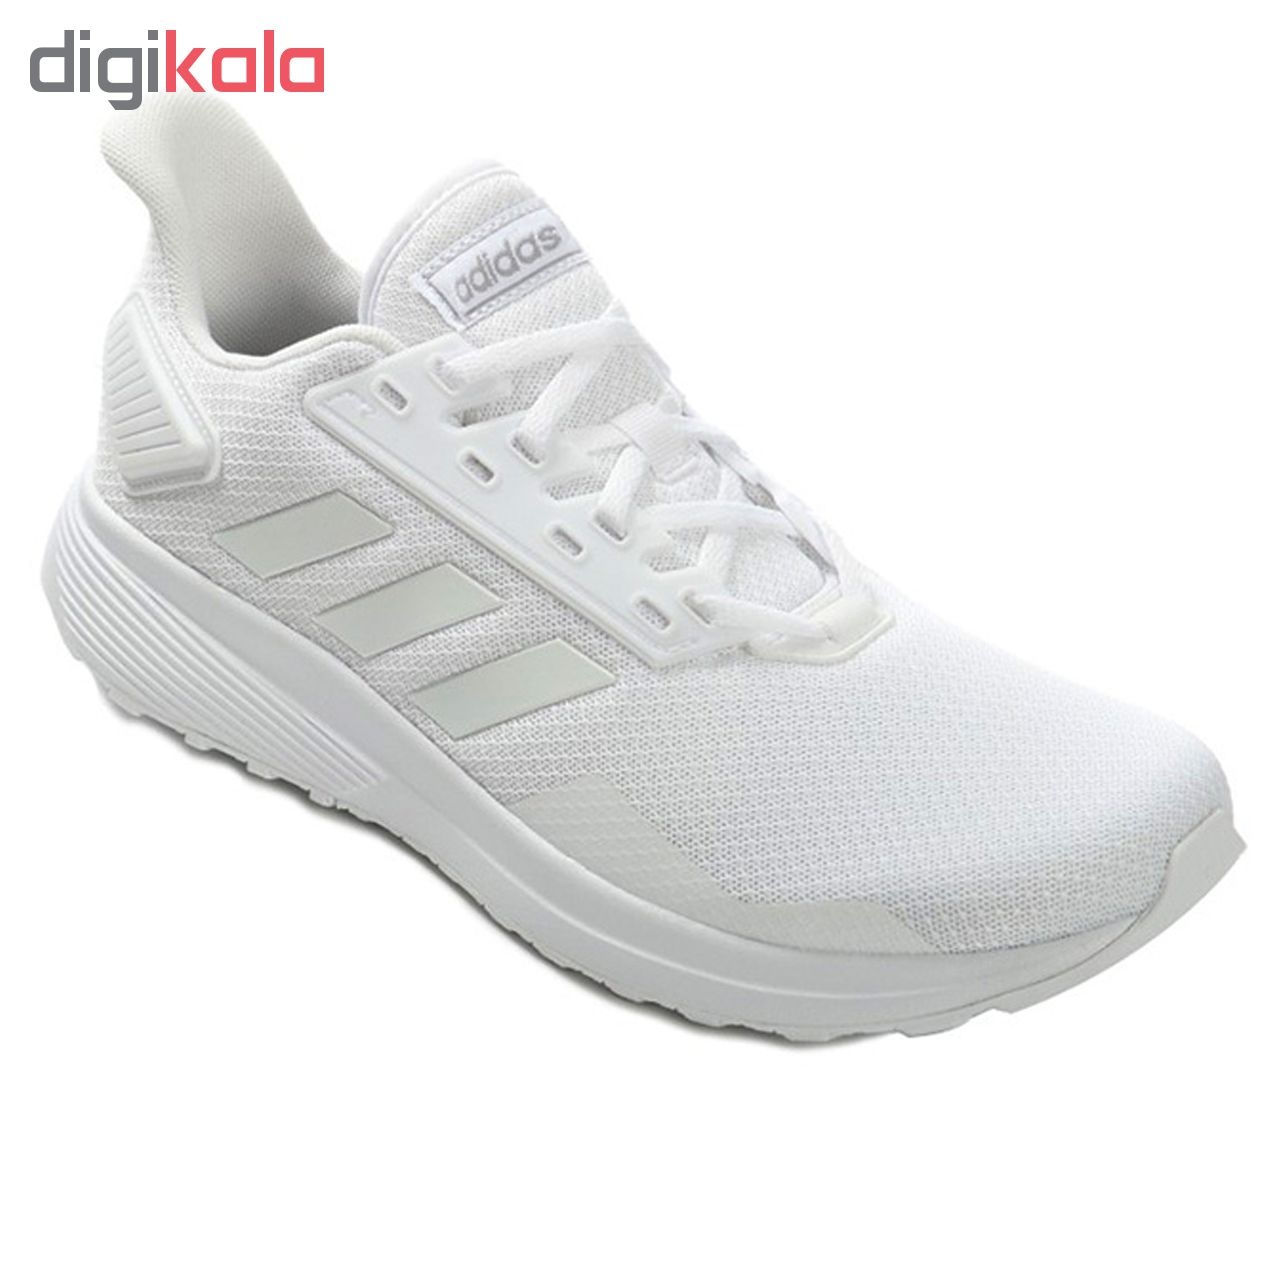  کفش مخصوص دویدن مردانه آدیداس مدل DURAMO کد 8876-247